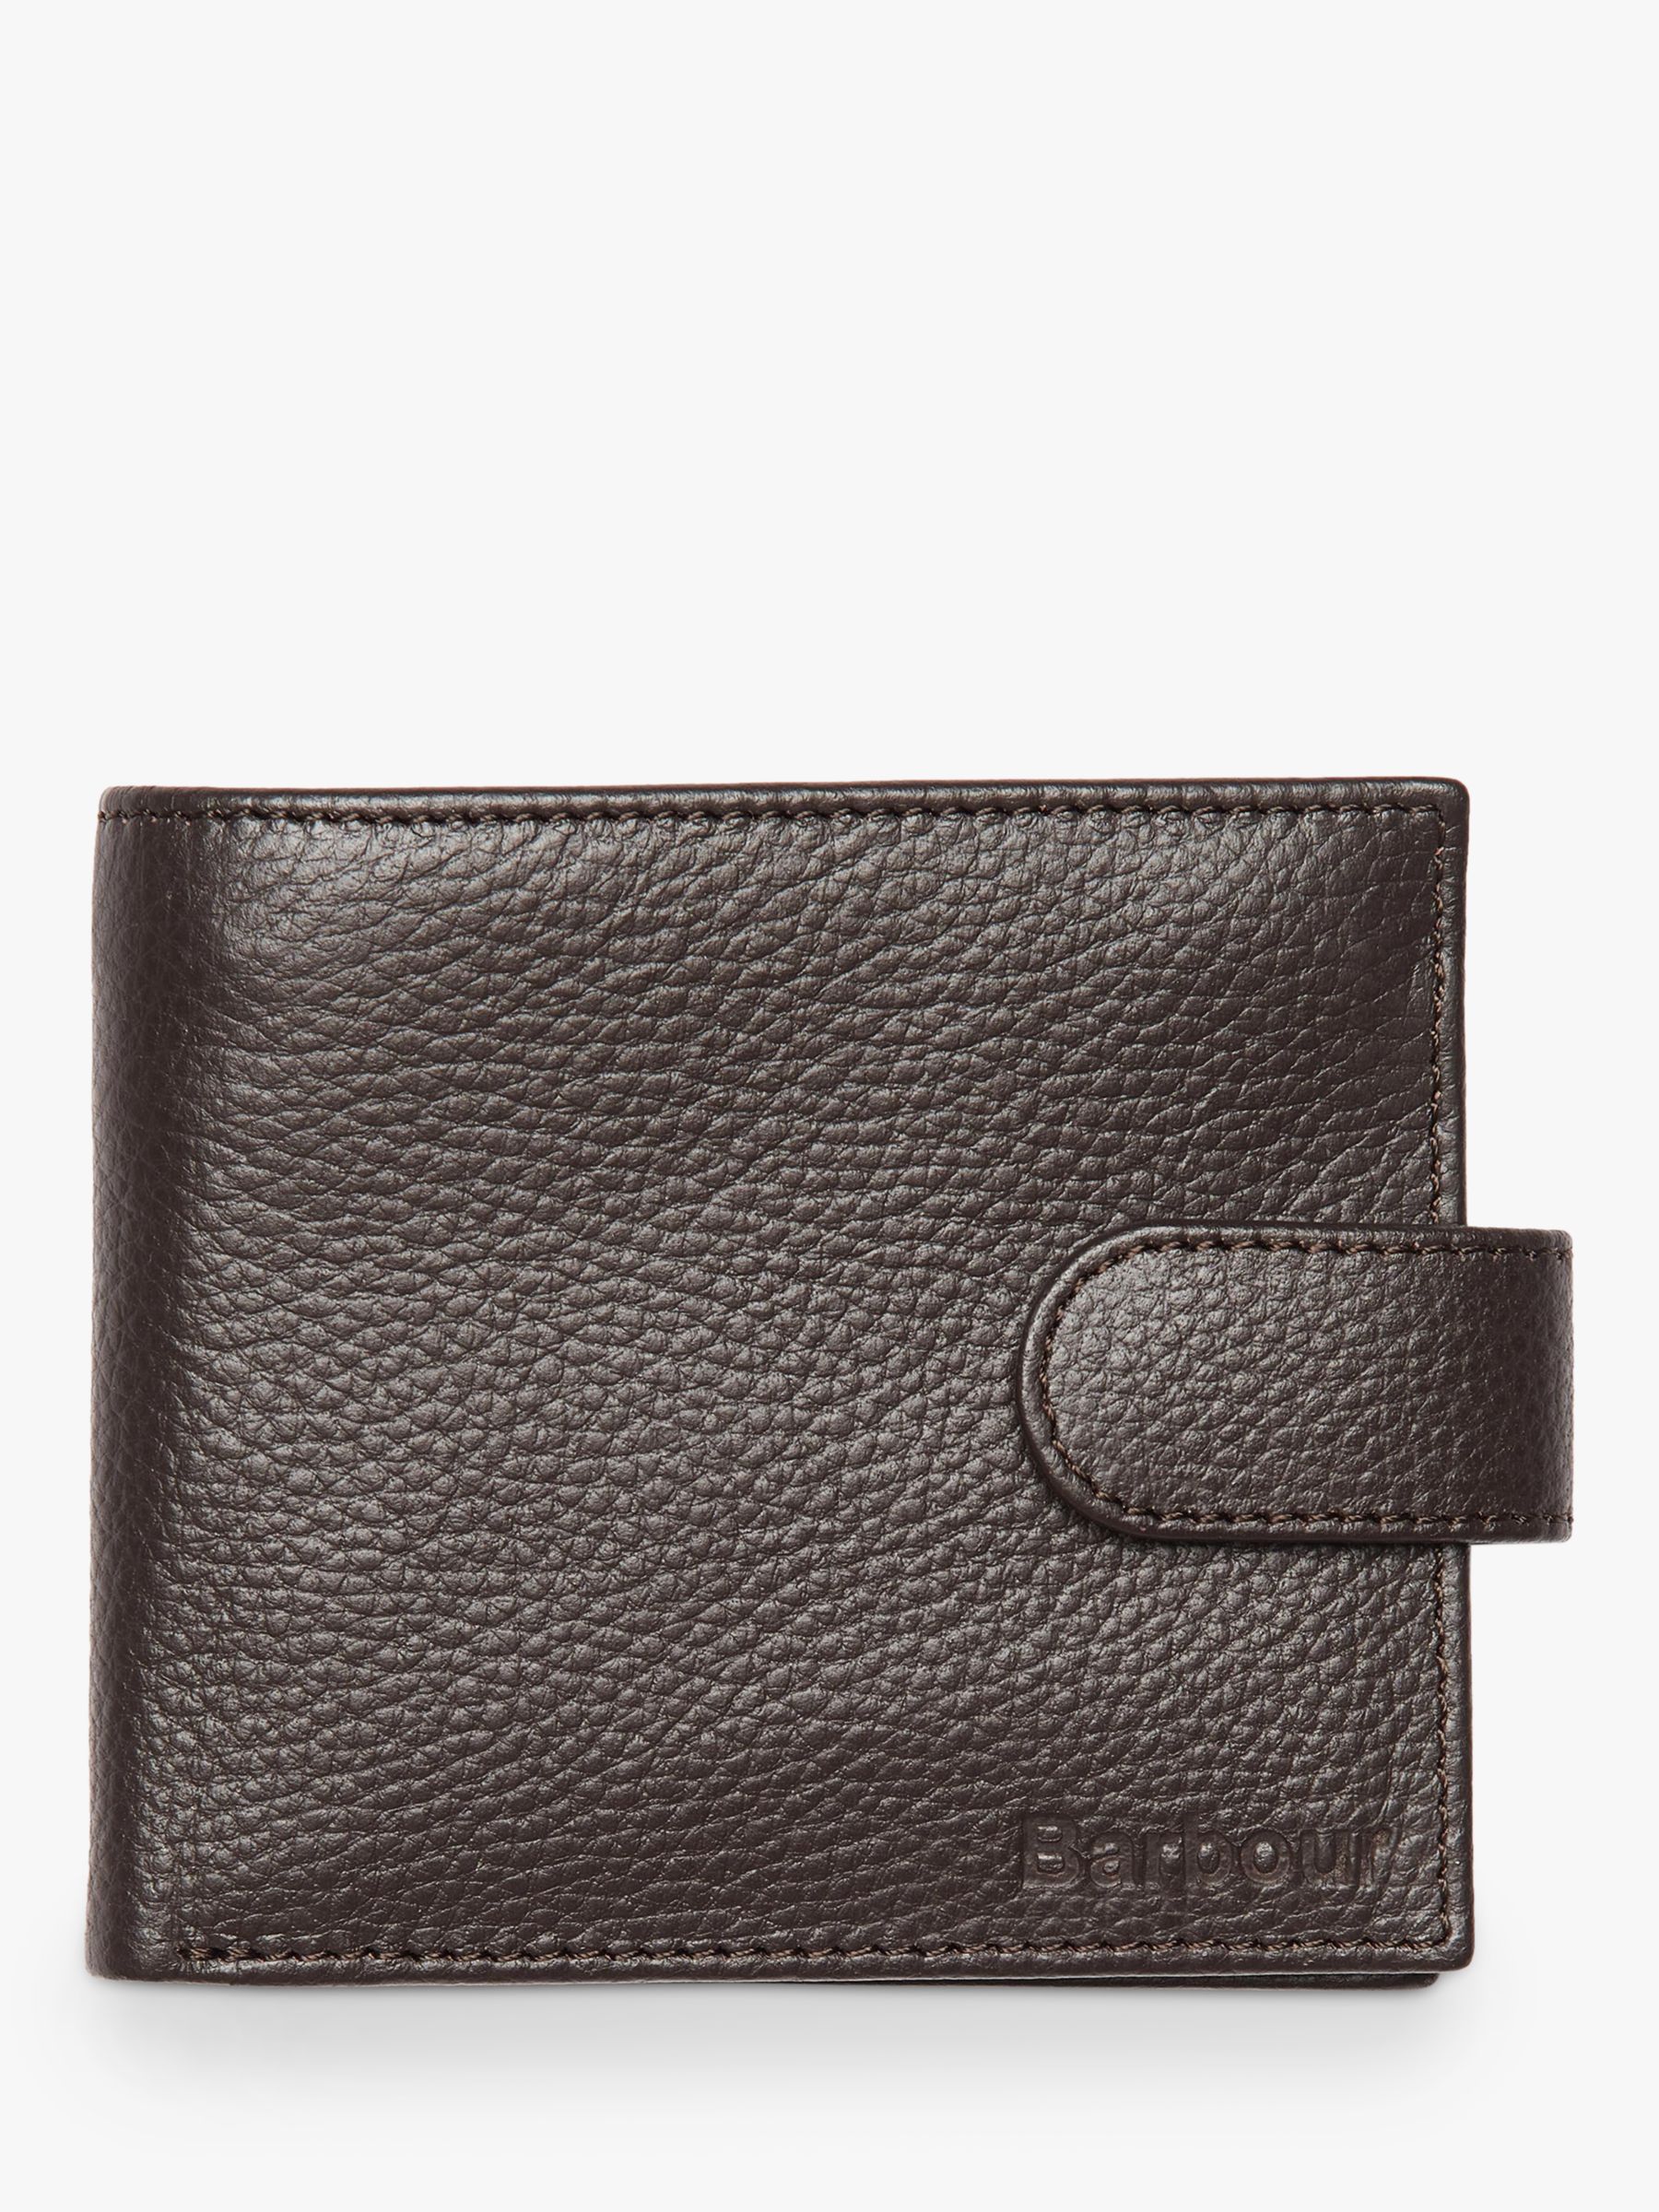 Barbour Amble Textured Leather Zip Wallet, Dark Brown